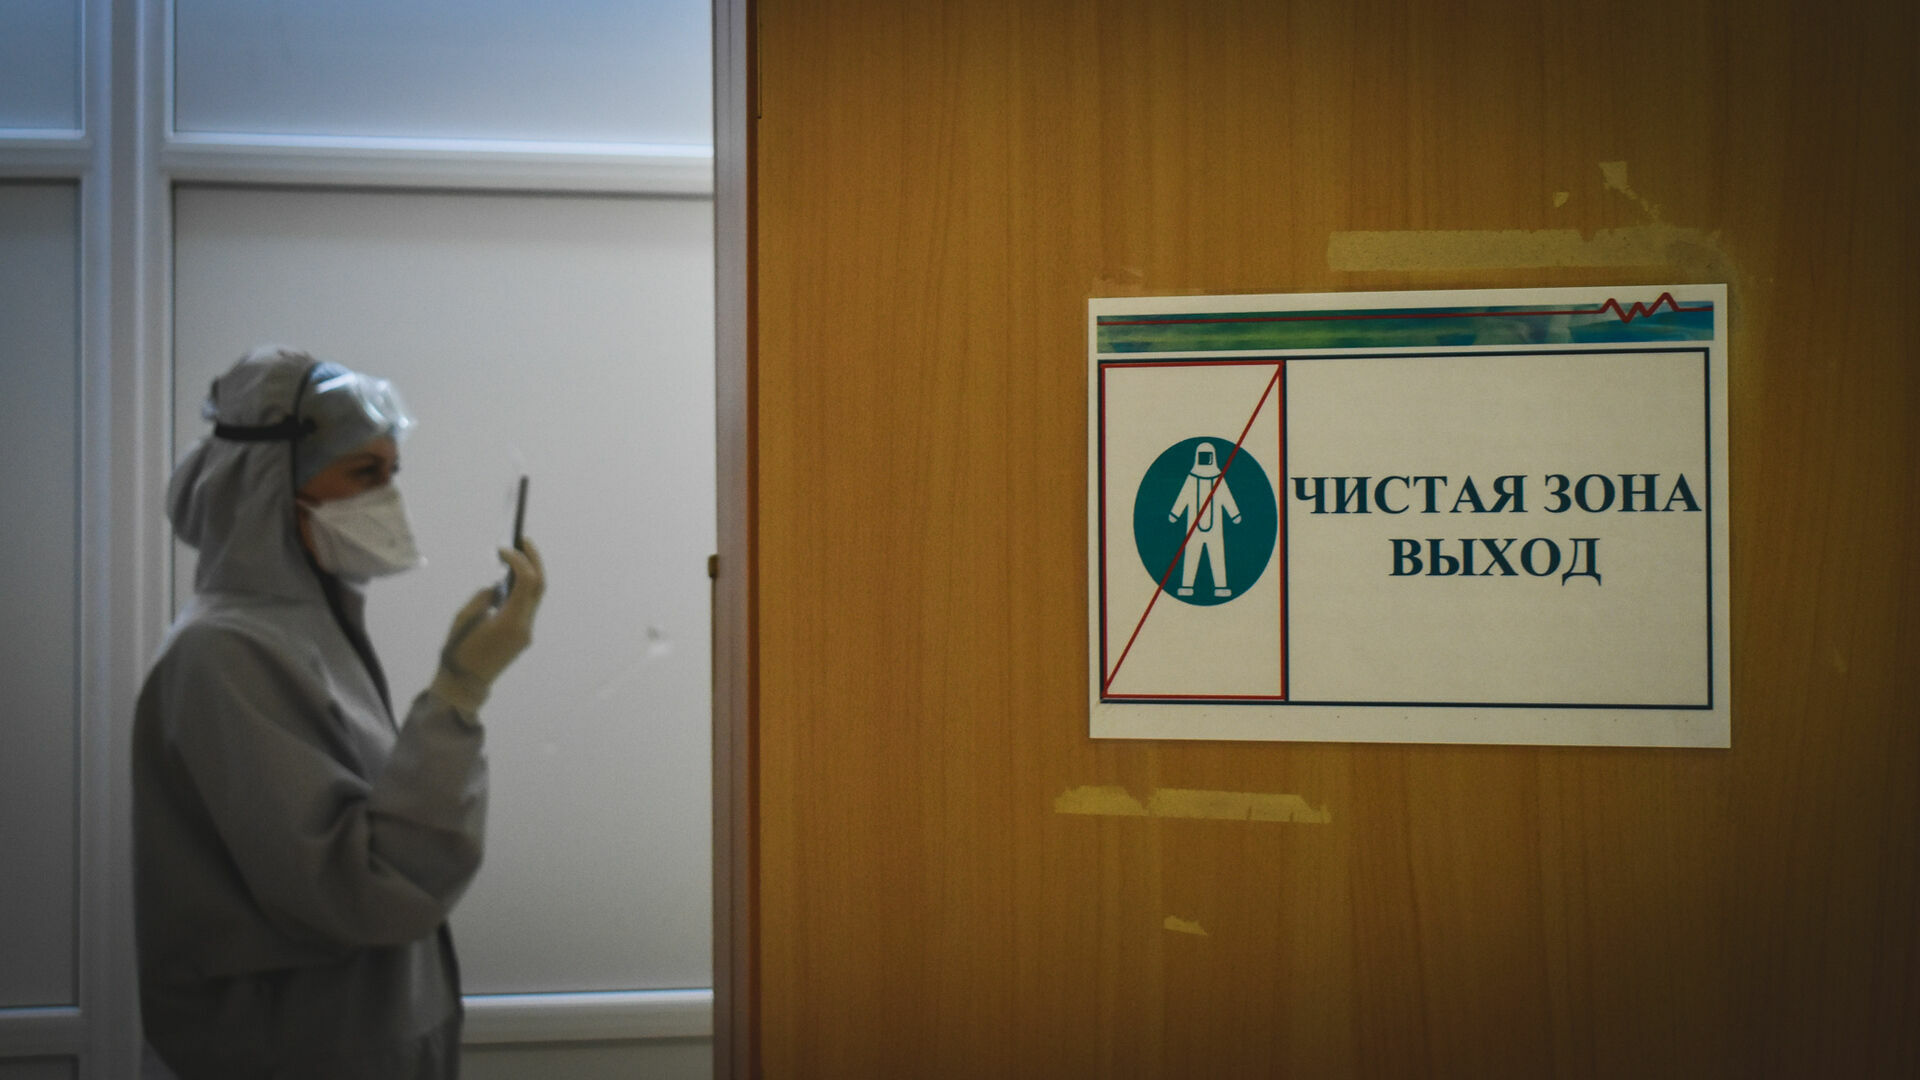 Обсерватор на 160 мест развернули для больных омикроном в Нижнем Новгороде